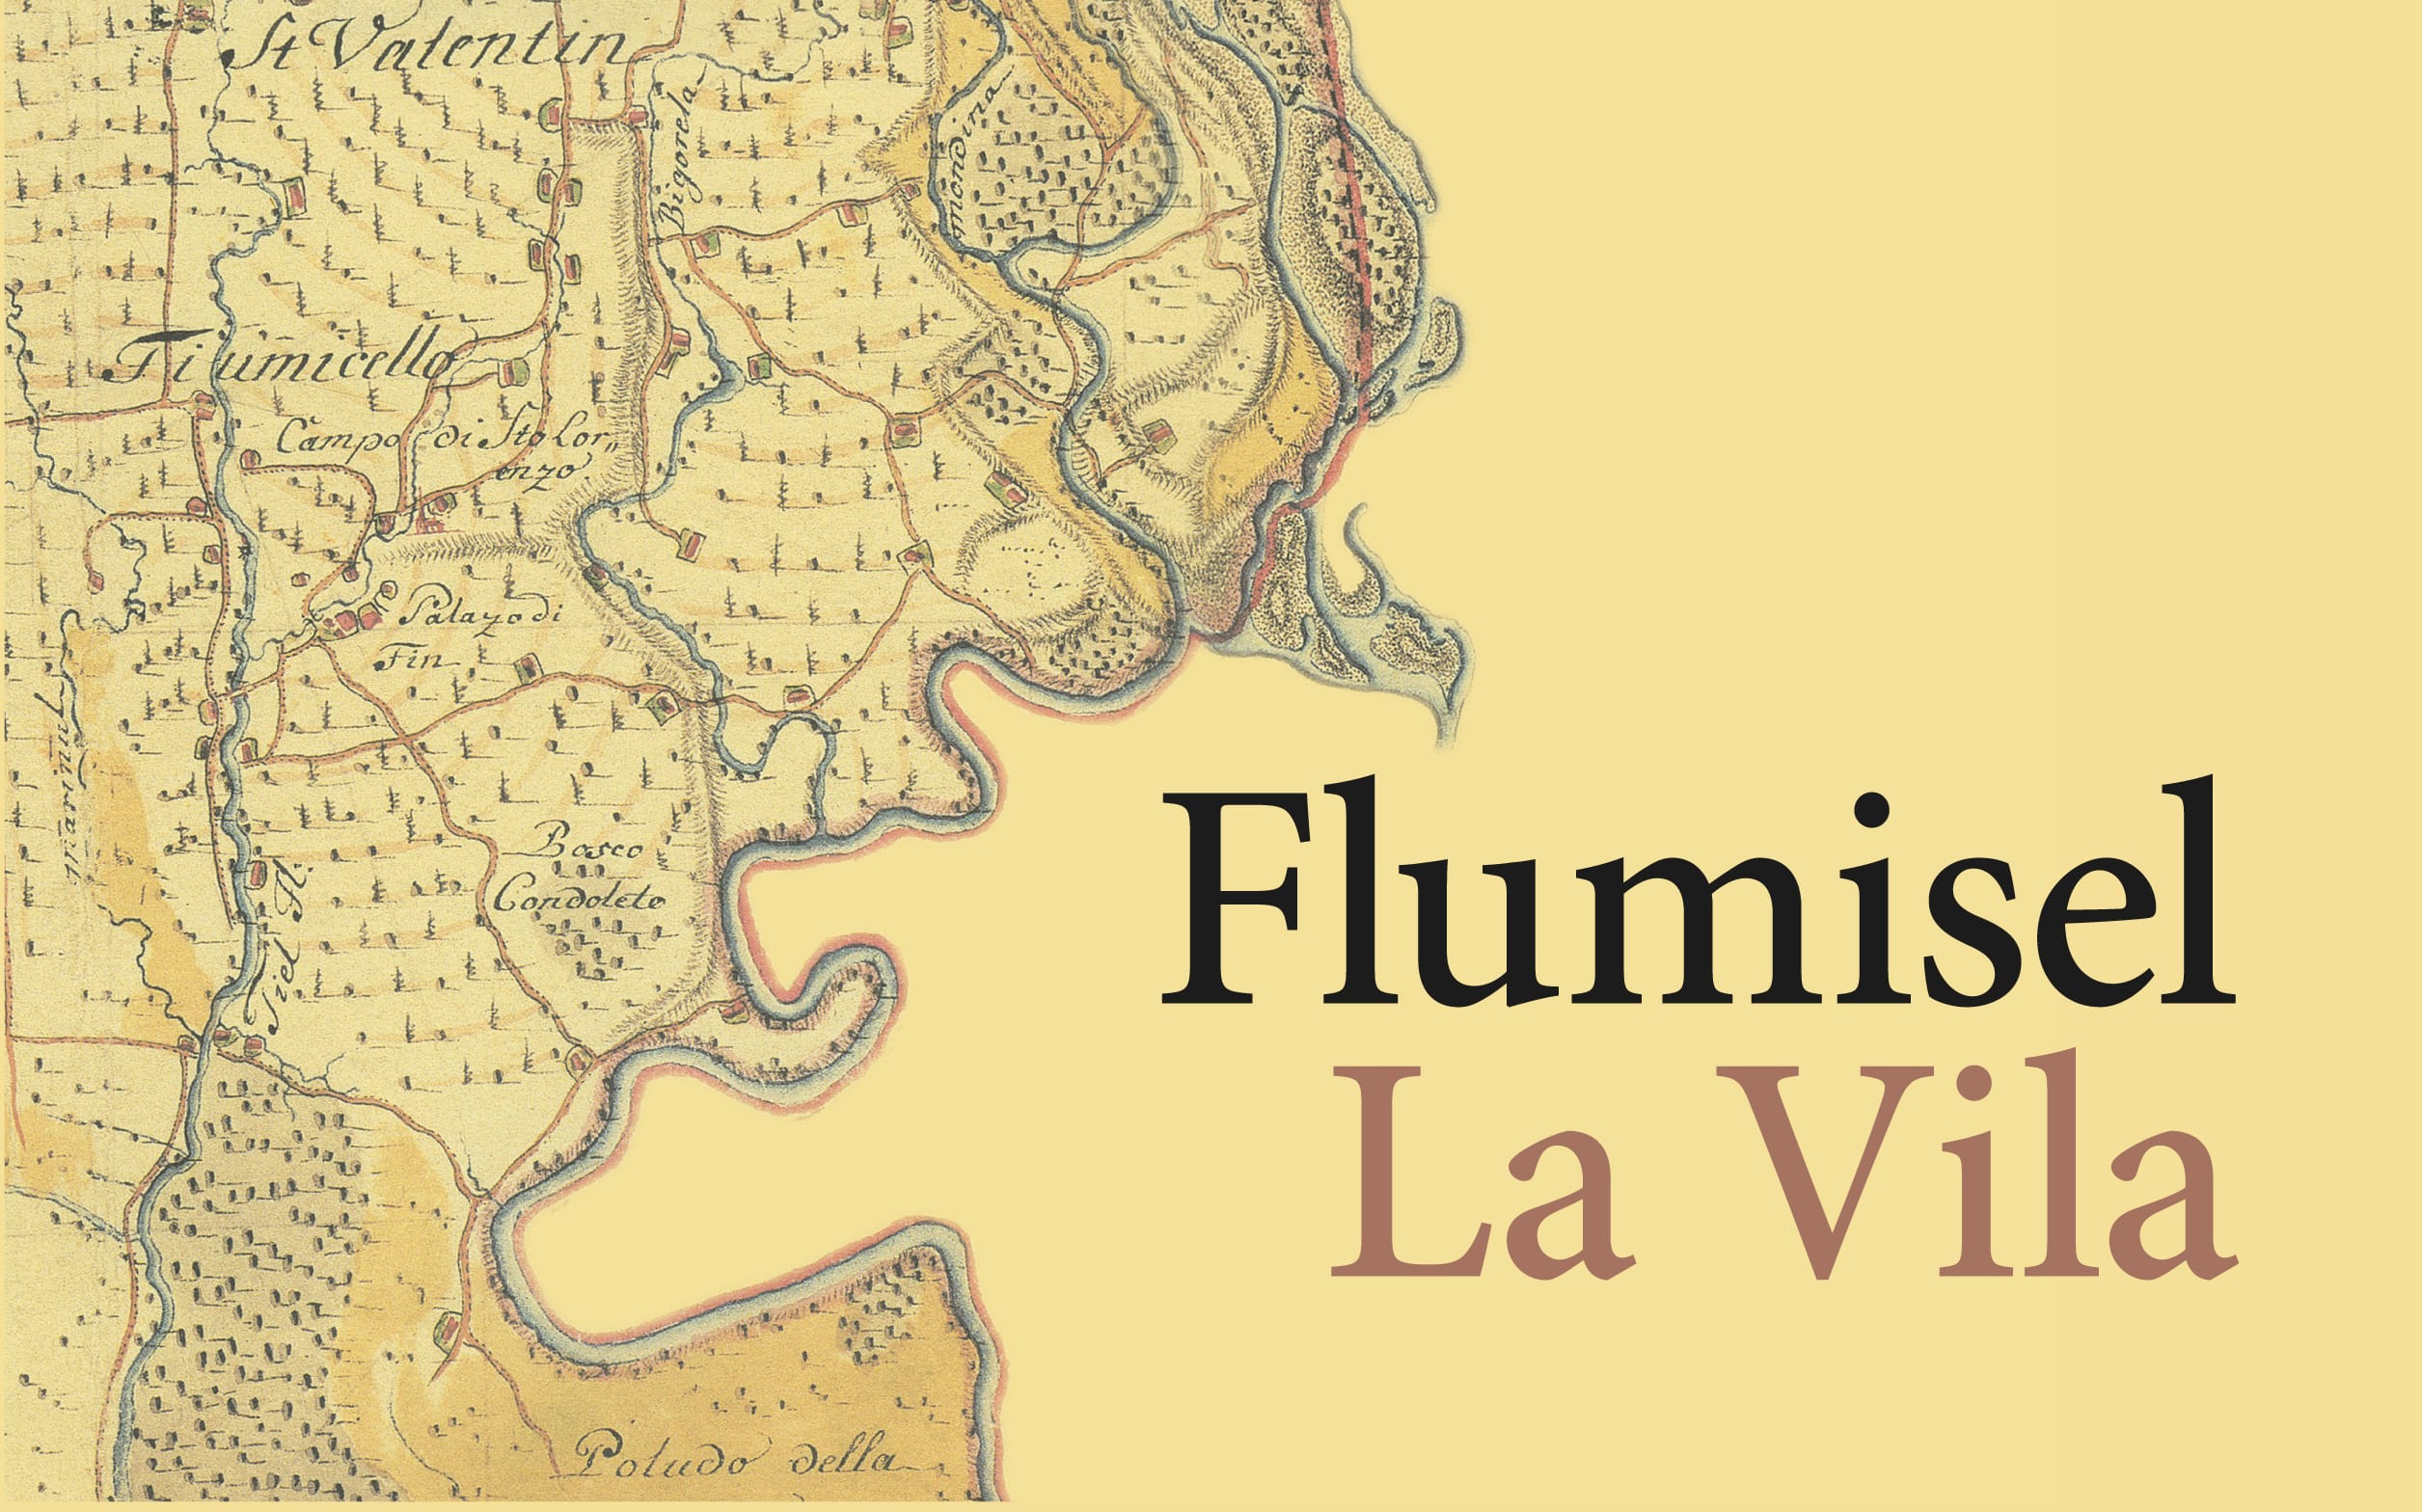 Un viaggio nella storia di Fiumicello e Villa Vicentina, tra uomini e popoli